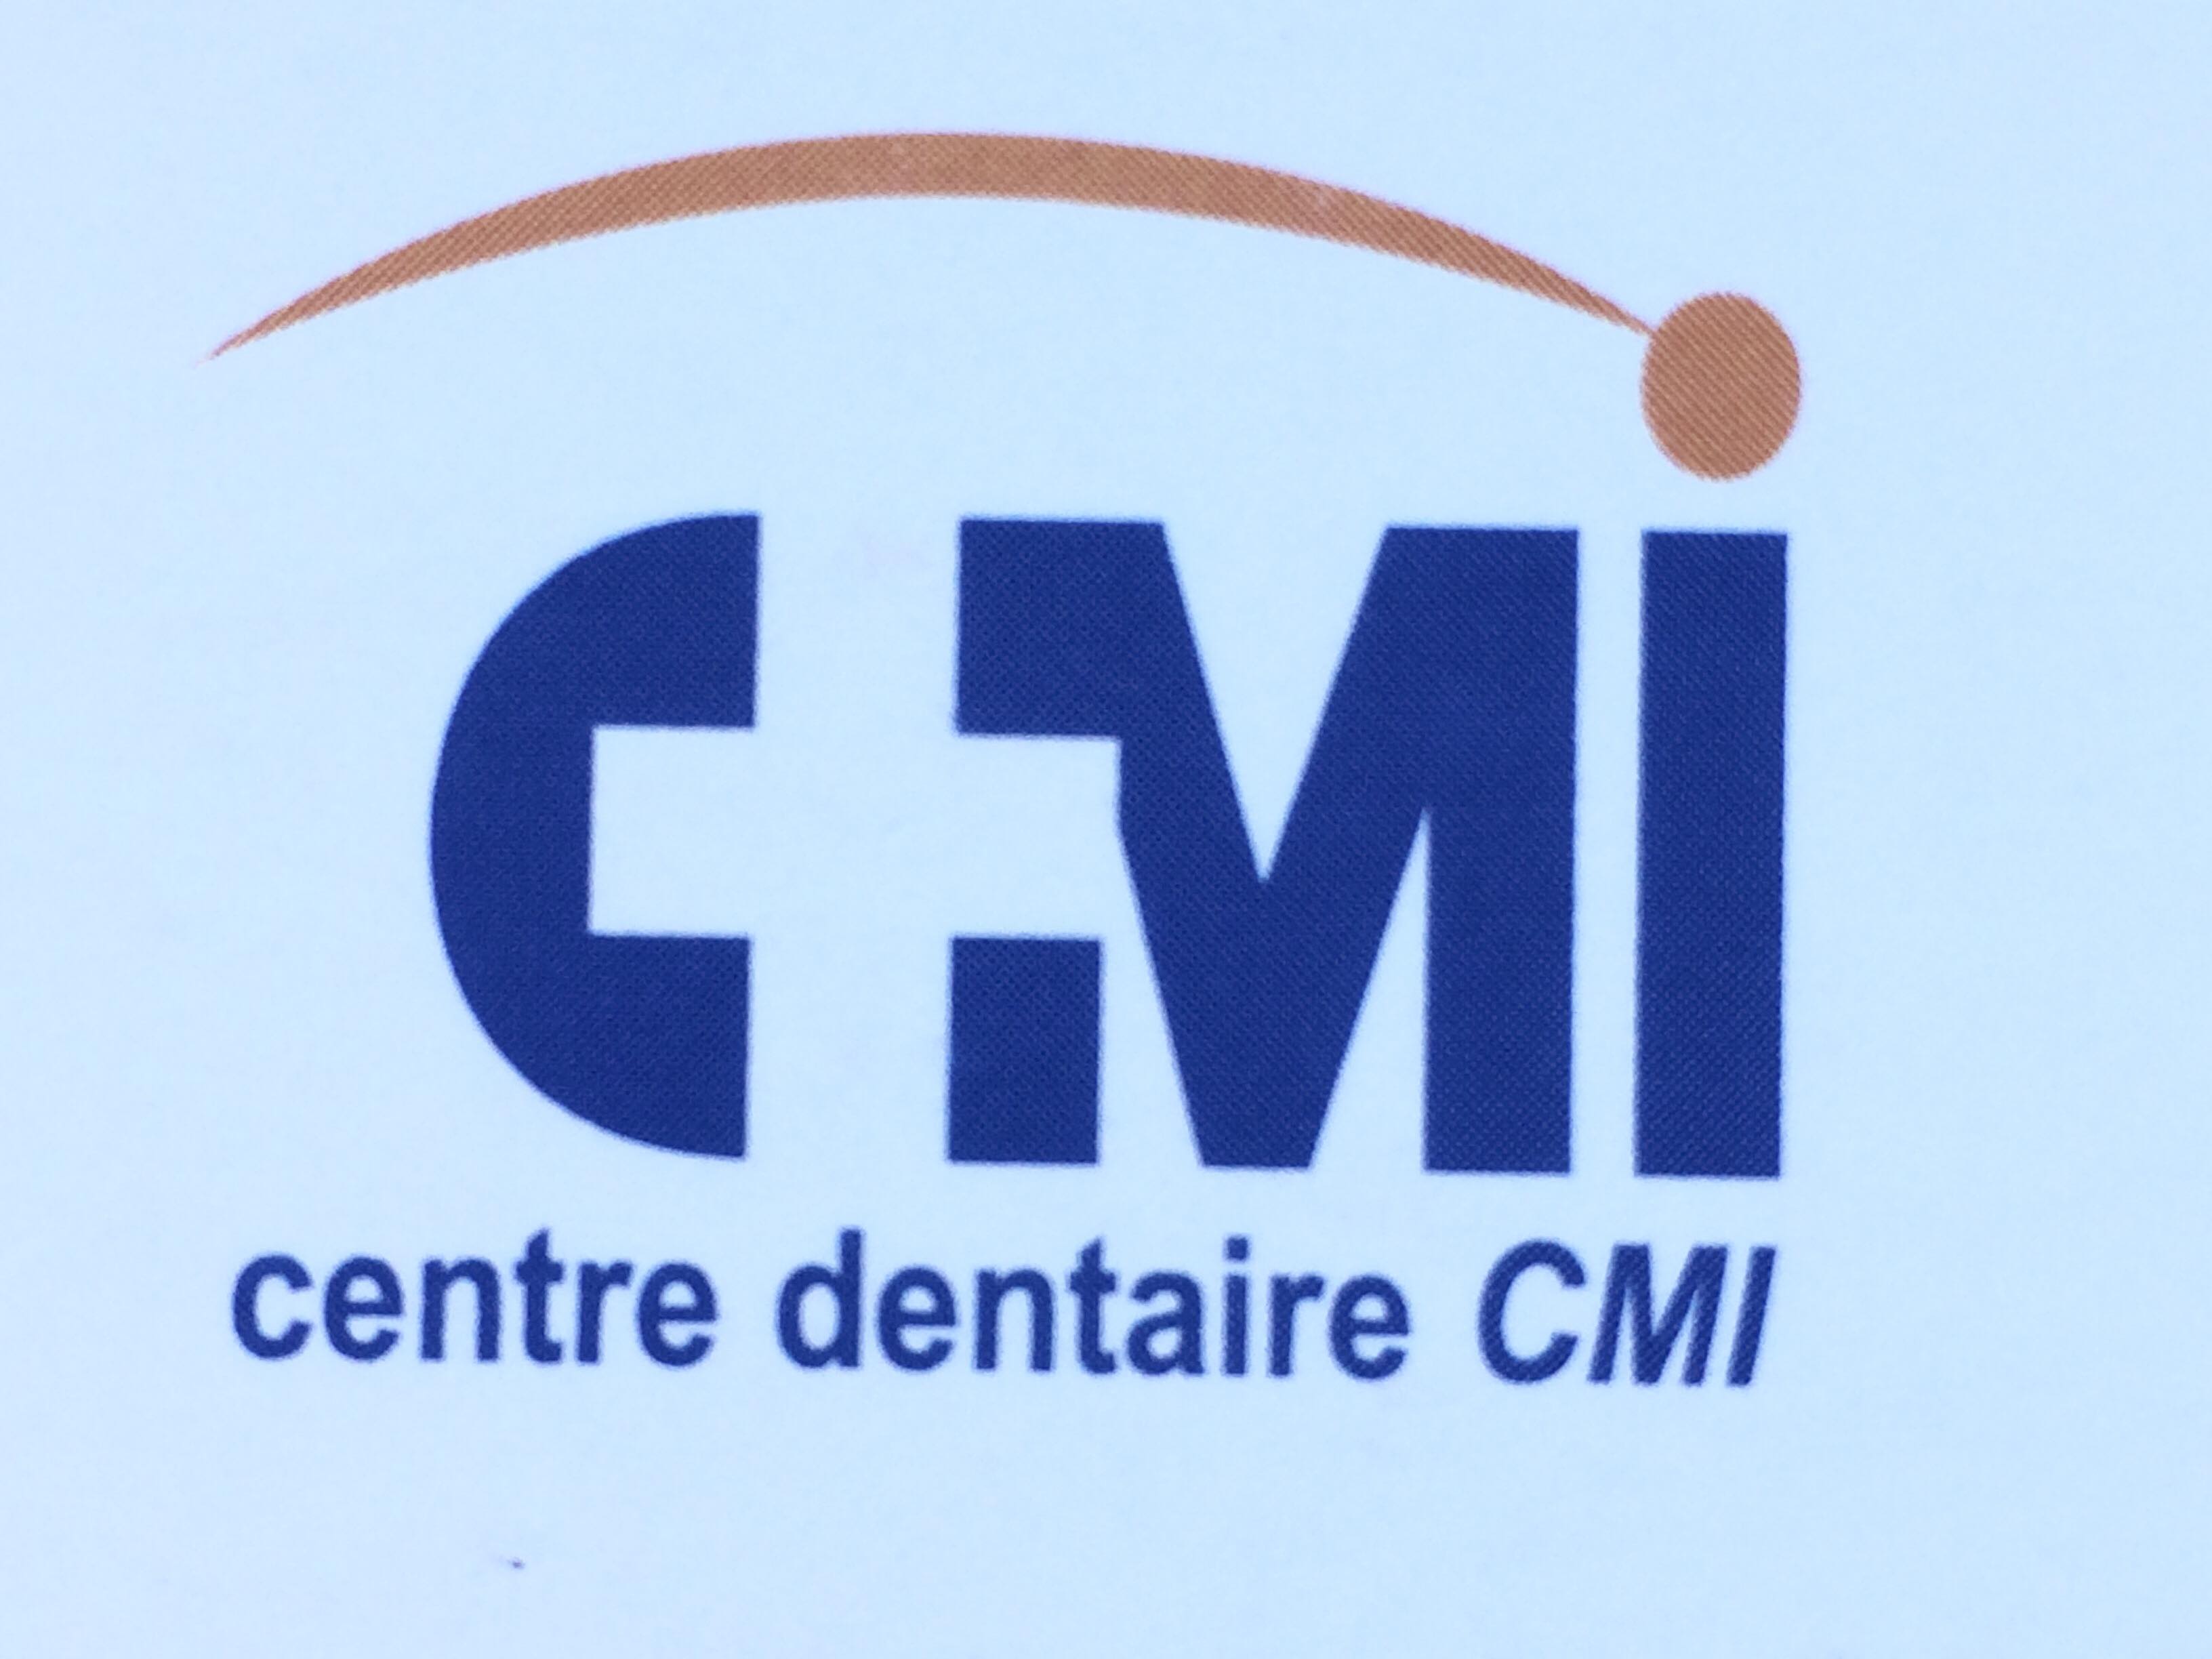 Centre Dentaire CMI - Thao Deo, DMD - Dentist